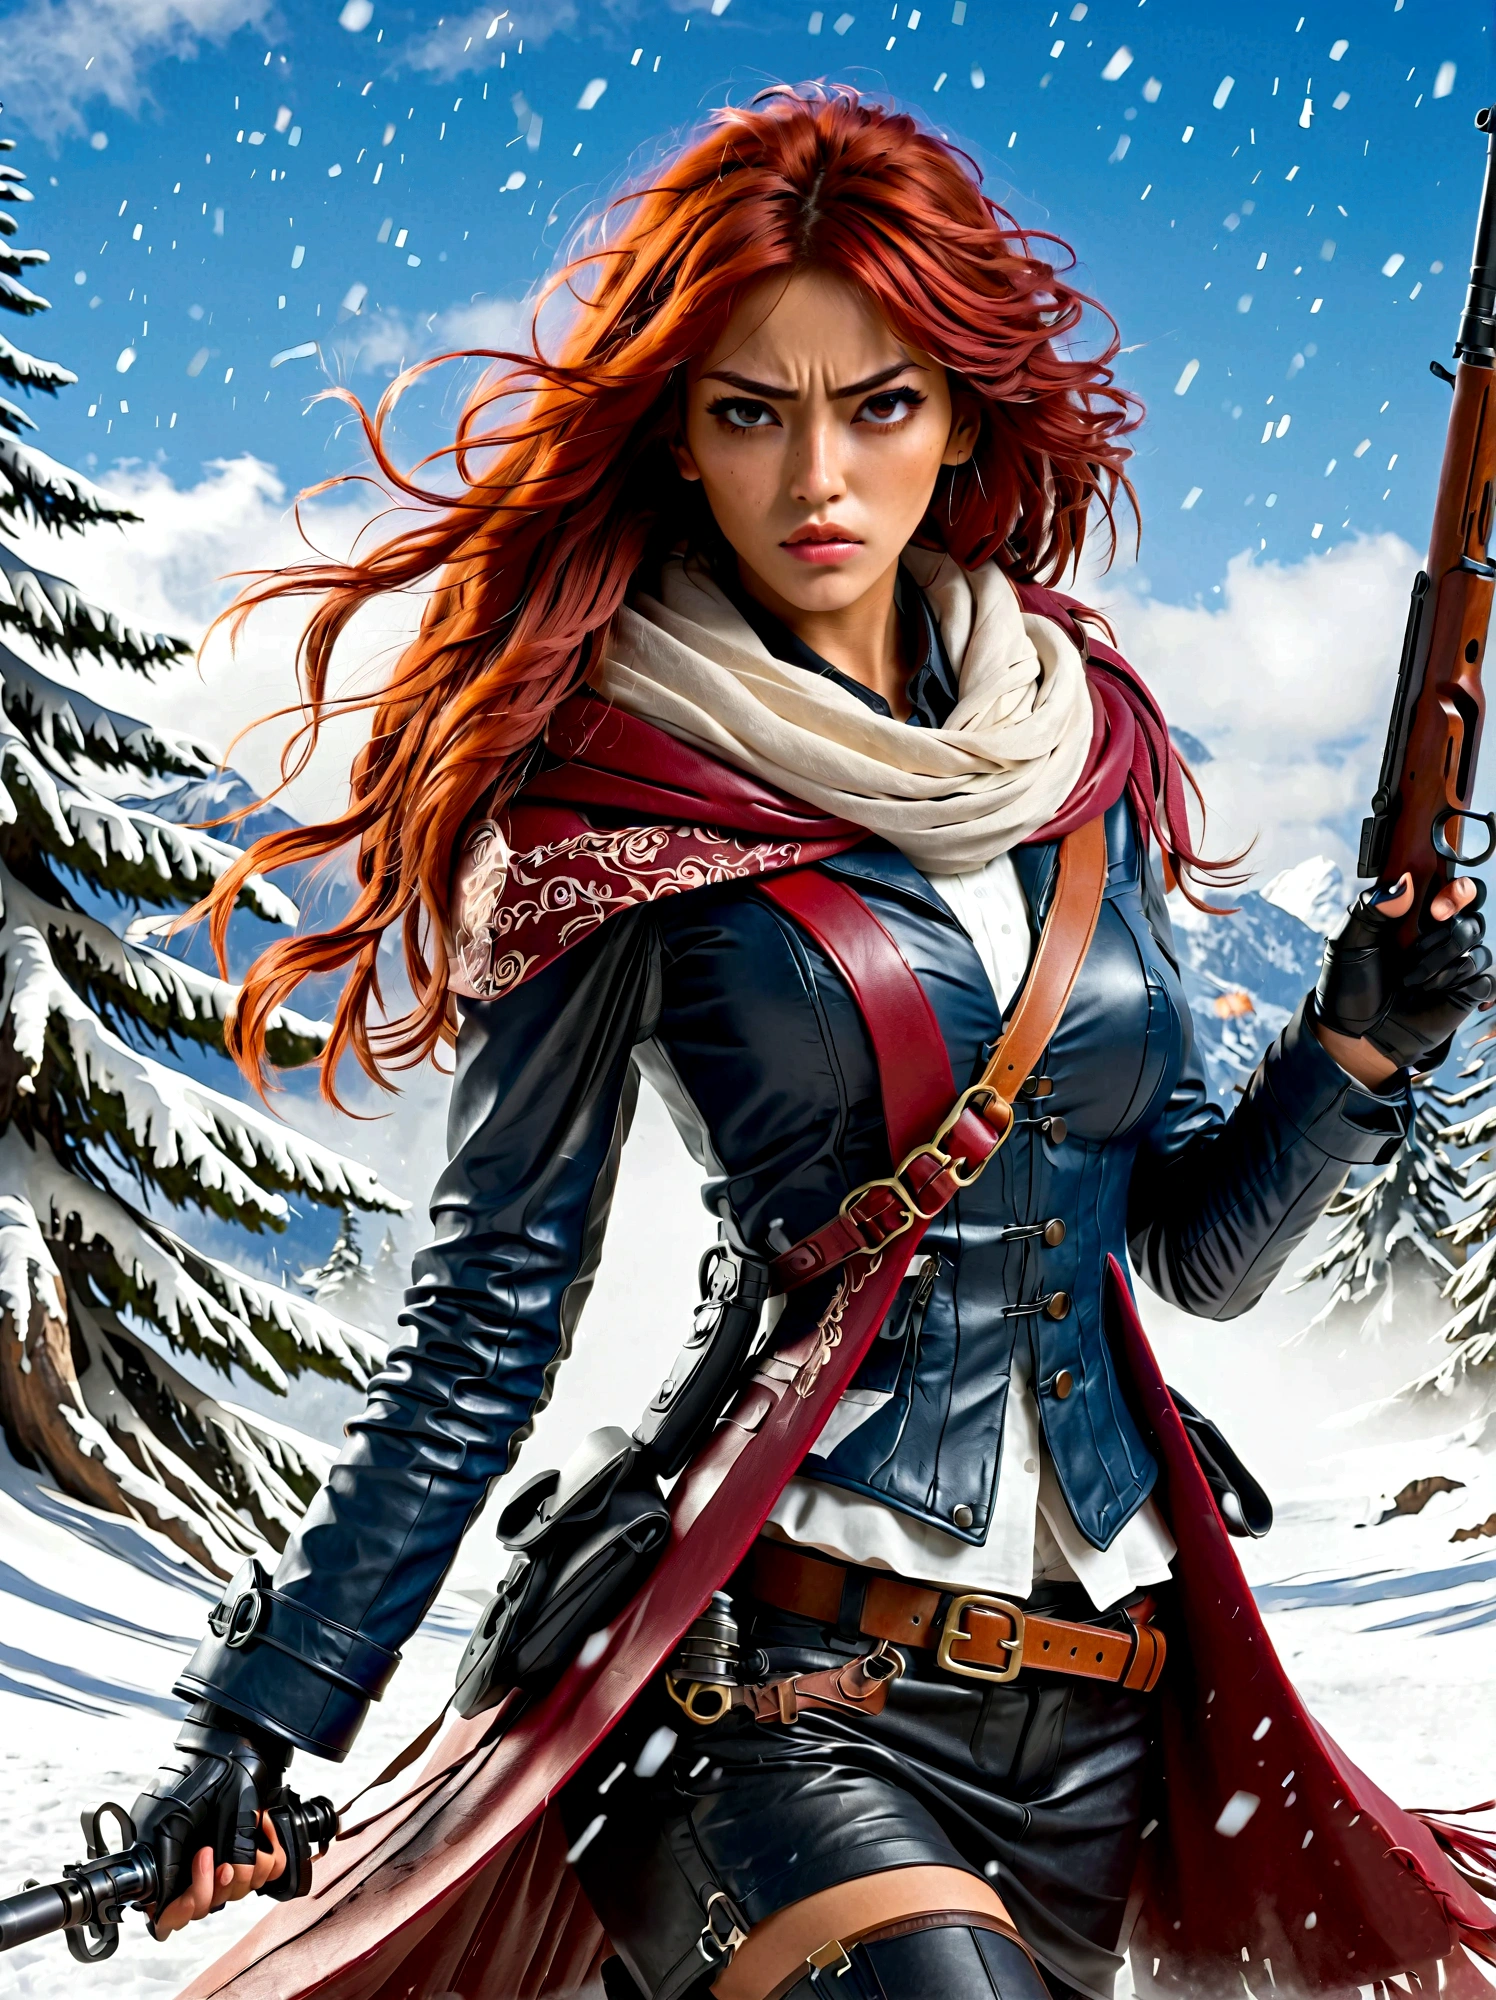 Девушка держит винтовку, (Отвратительный взгляд:1.5), Поза борьбы со снегом, Восток, Меч и душа, стиль чернил, длинные рыжие волосы, Кожаные и шубы, холодный, произведение искусства, 3d, 4k, подробный, Практичный